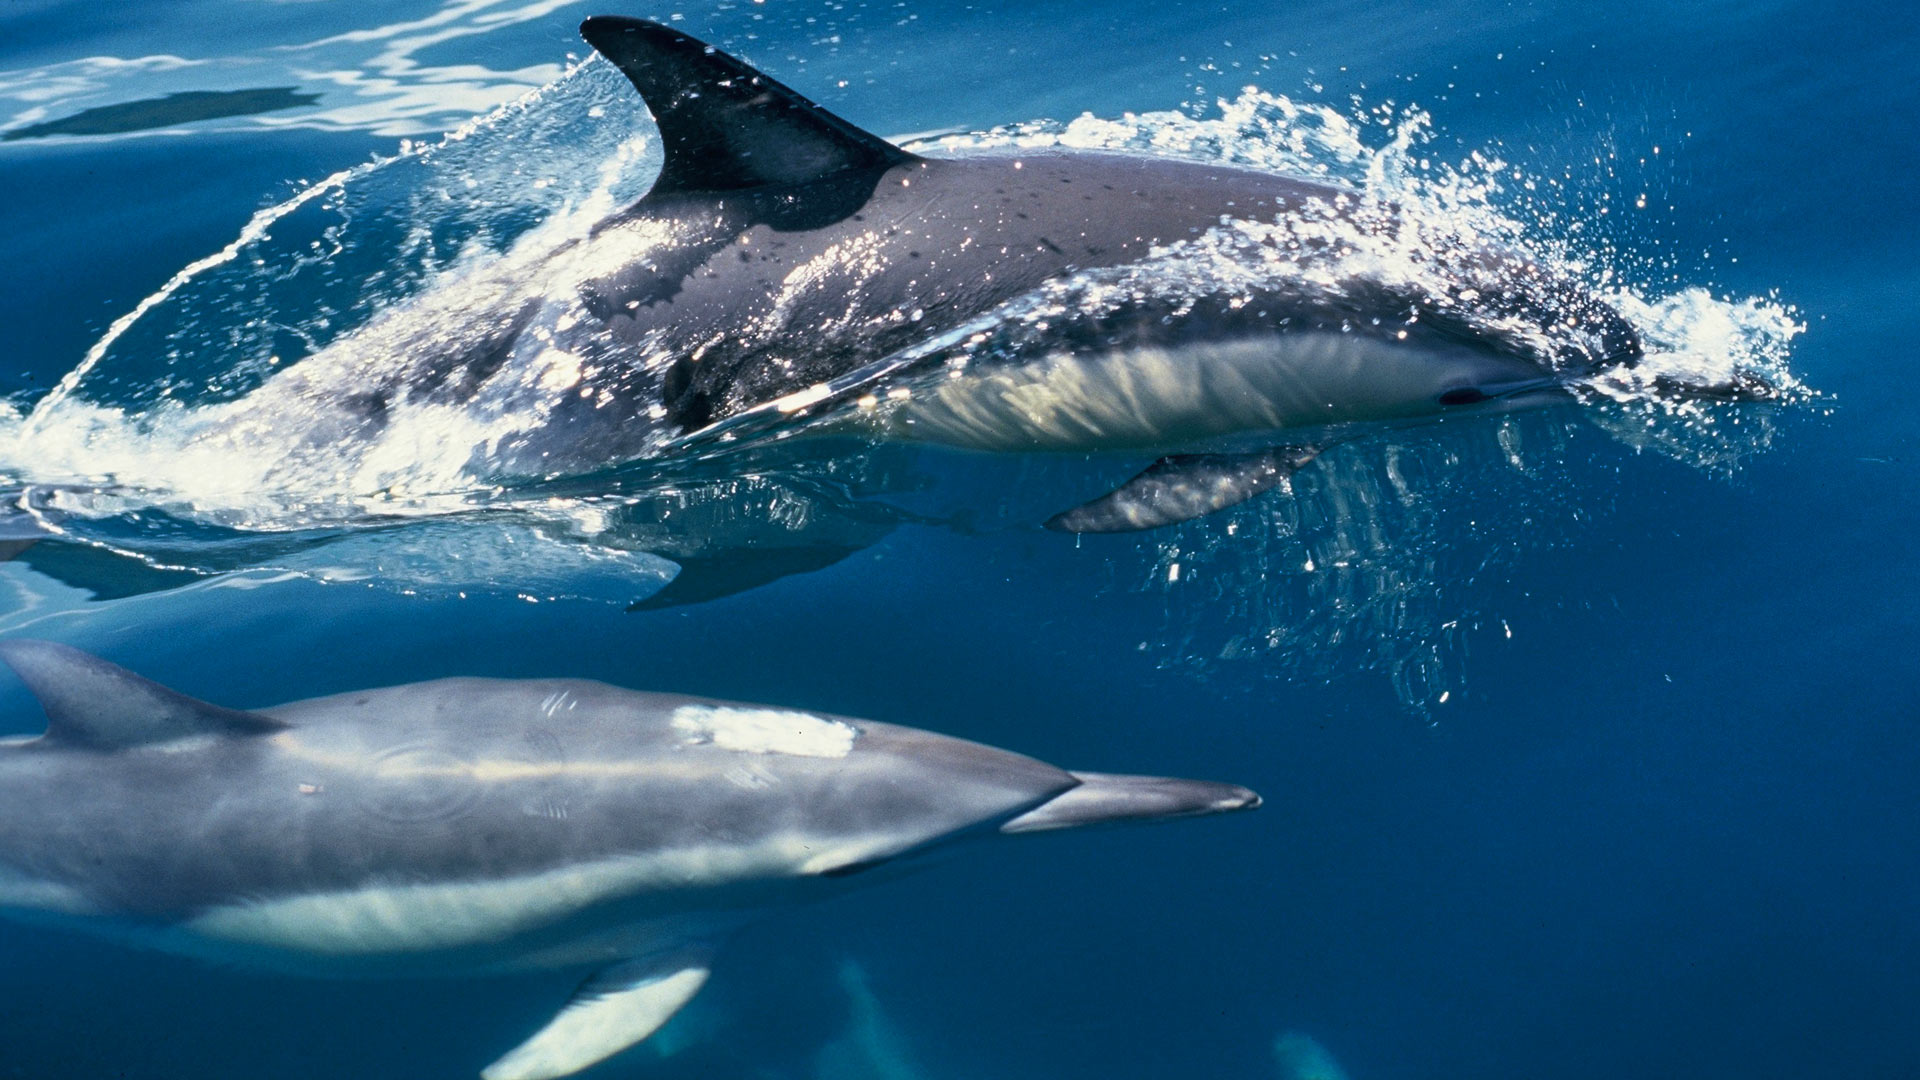 Common dolphin: New Zealand marine mammals